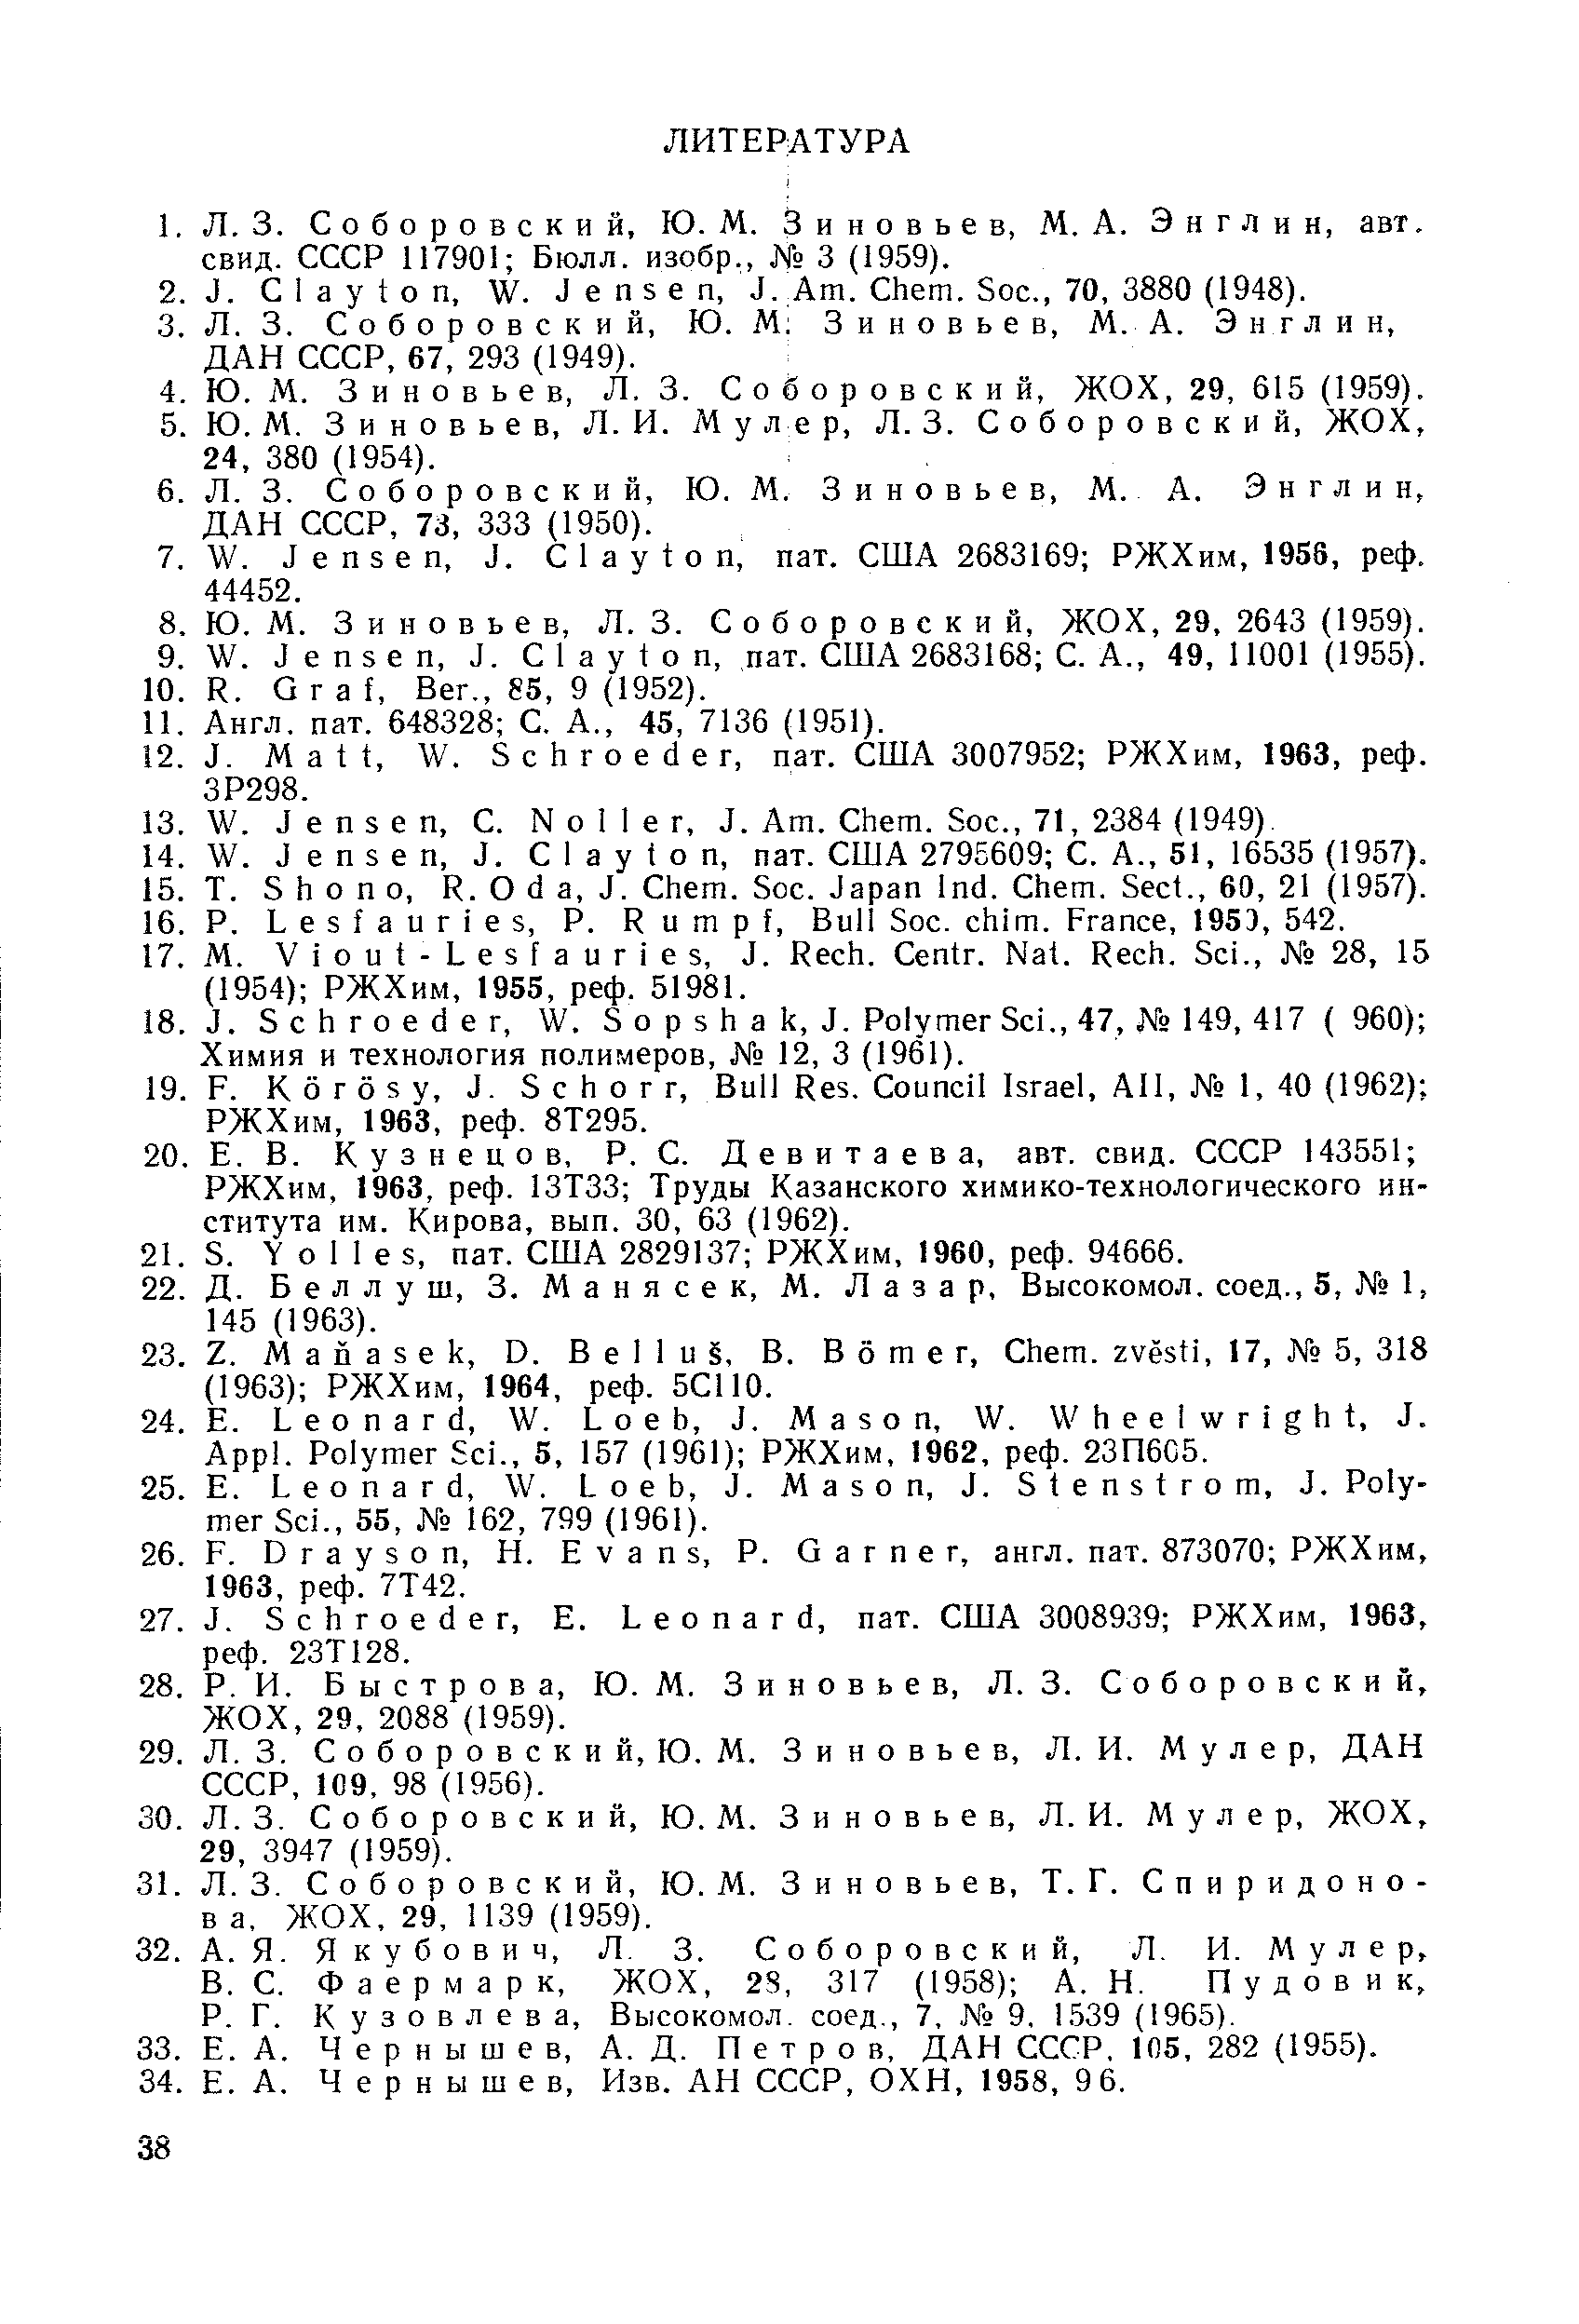 Ф а ё р м а р к, ЖОХ, 2S, 317 (1958) А. Н. Пудовик, Р. Г. К у 3 о в л е в а, Высокомол. соед., 7, 9, 1,539 (1965).